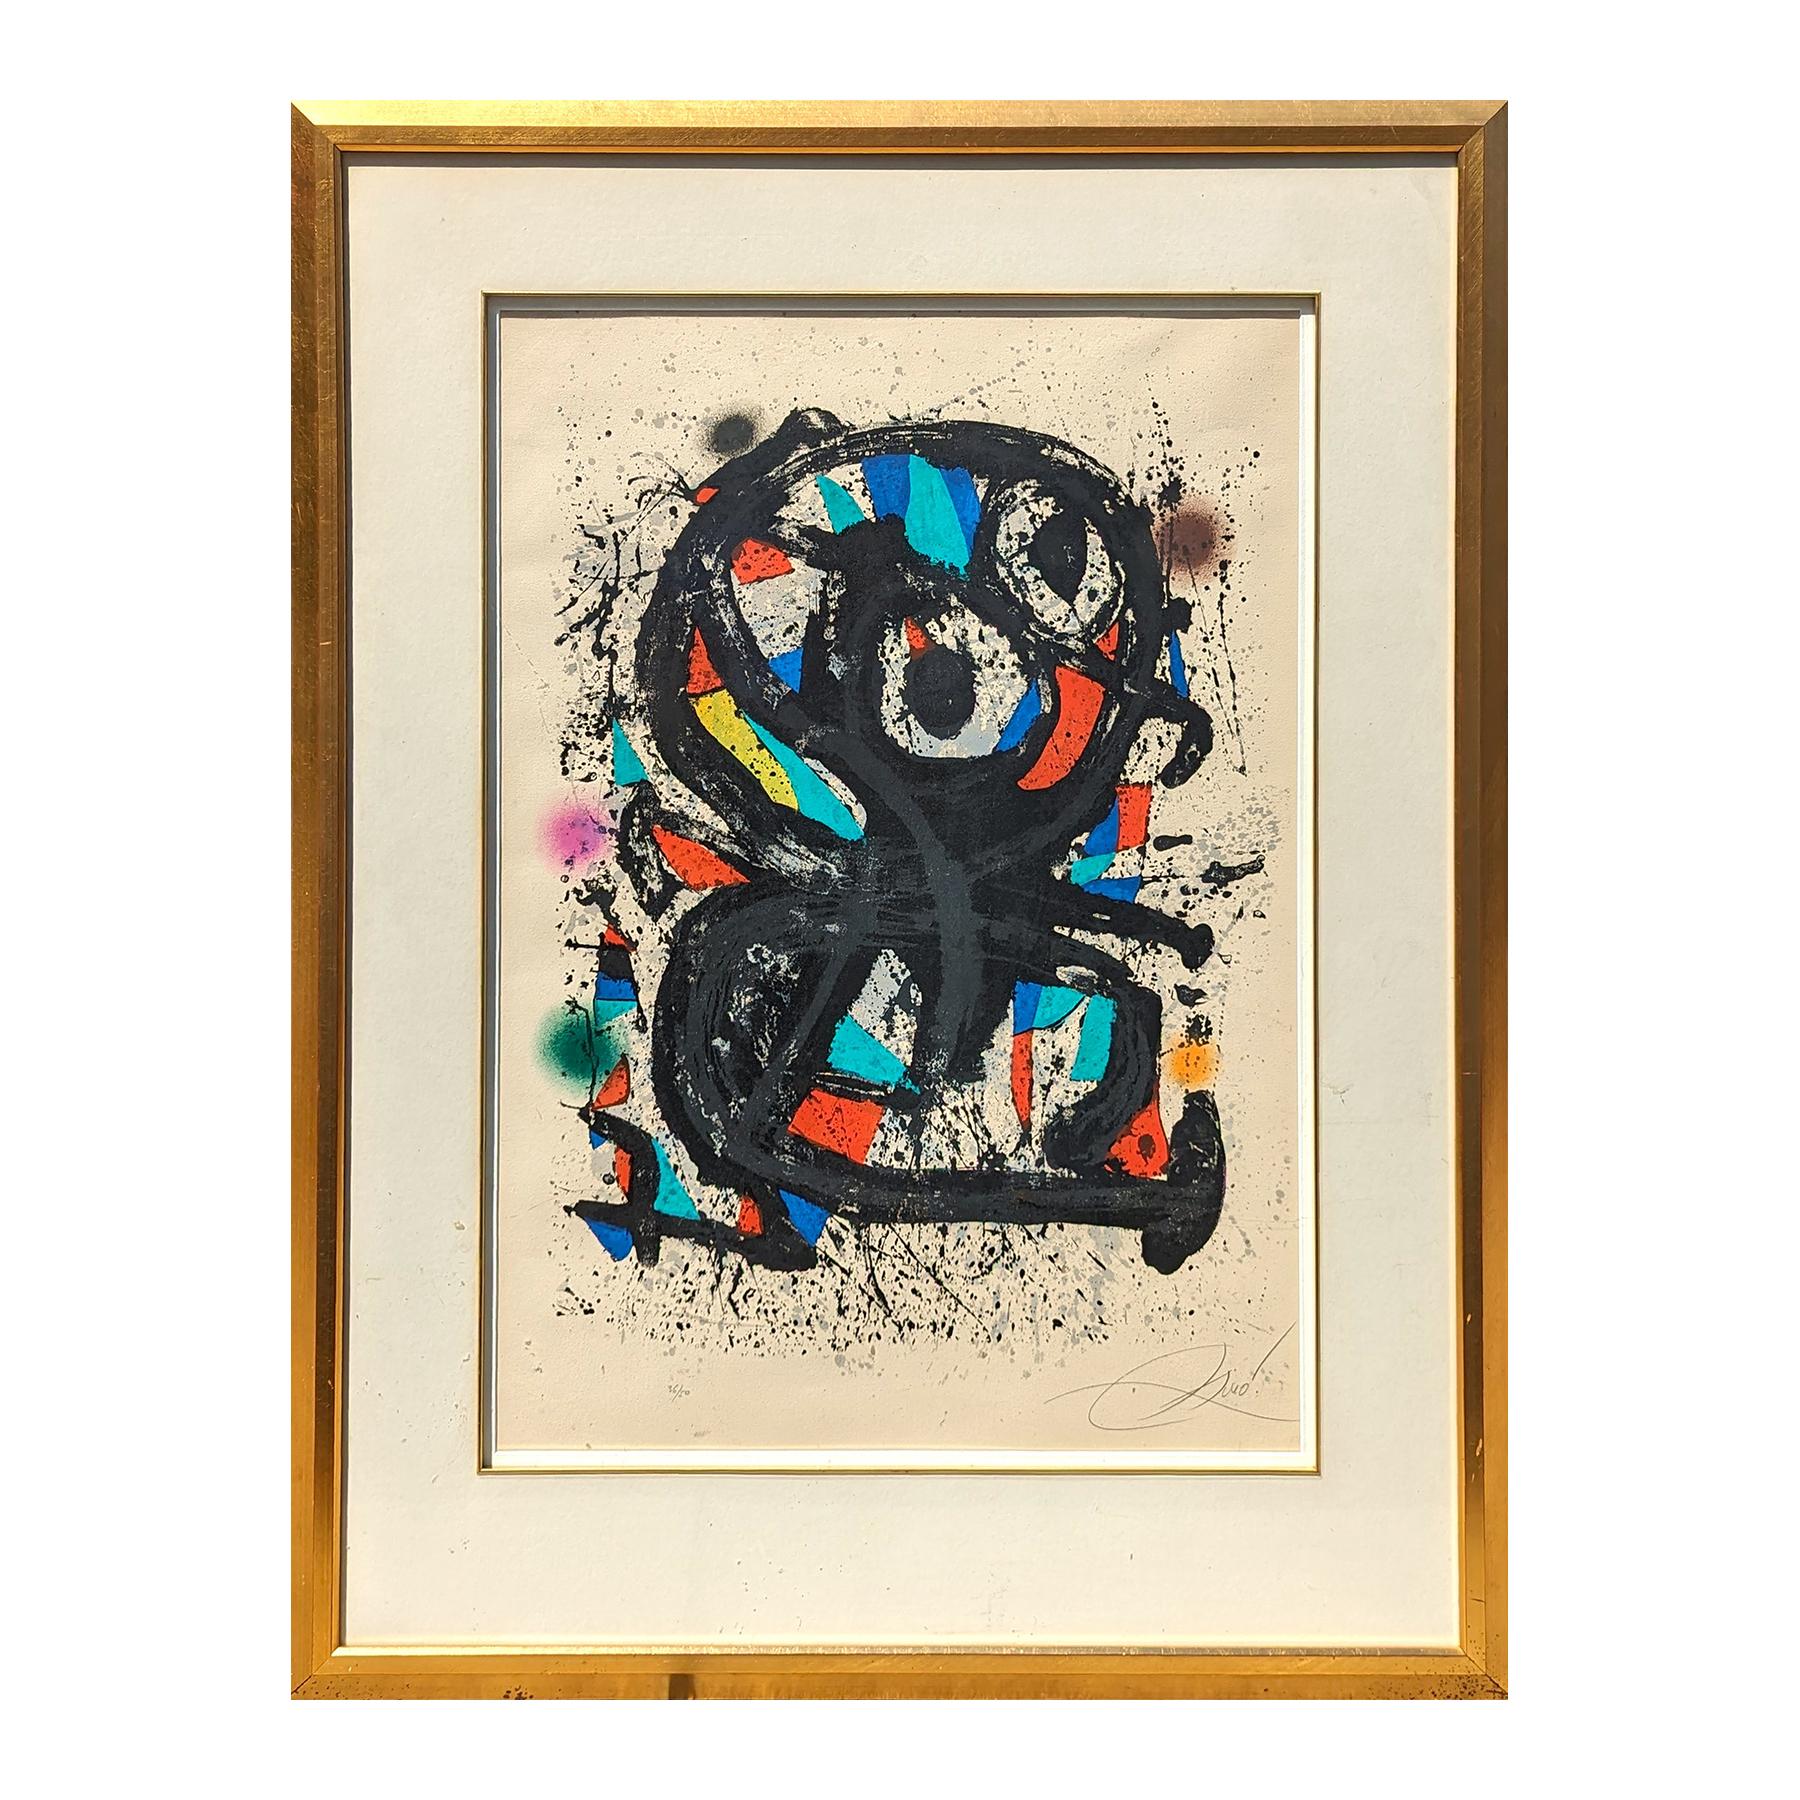 Lithographie surréaliste moderne abstraite géométrique du Grand Palais, édition 36/50 - Print de Joan Miró